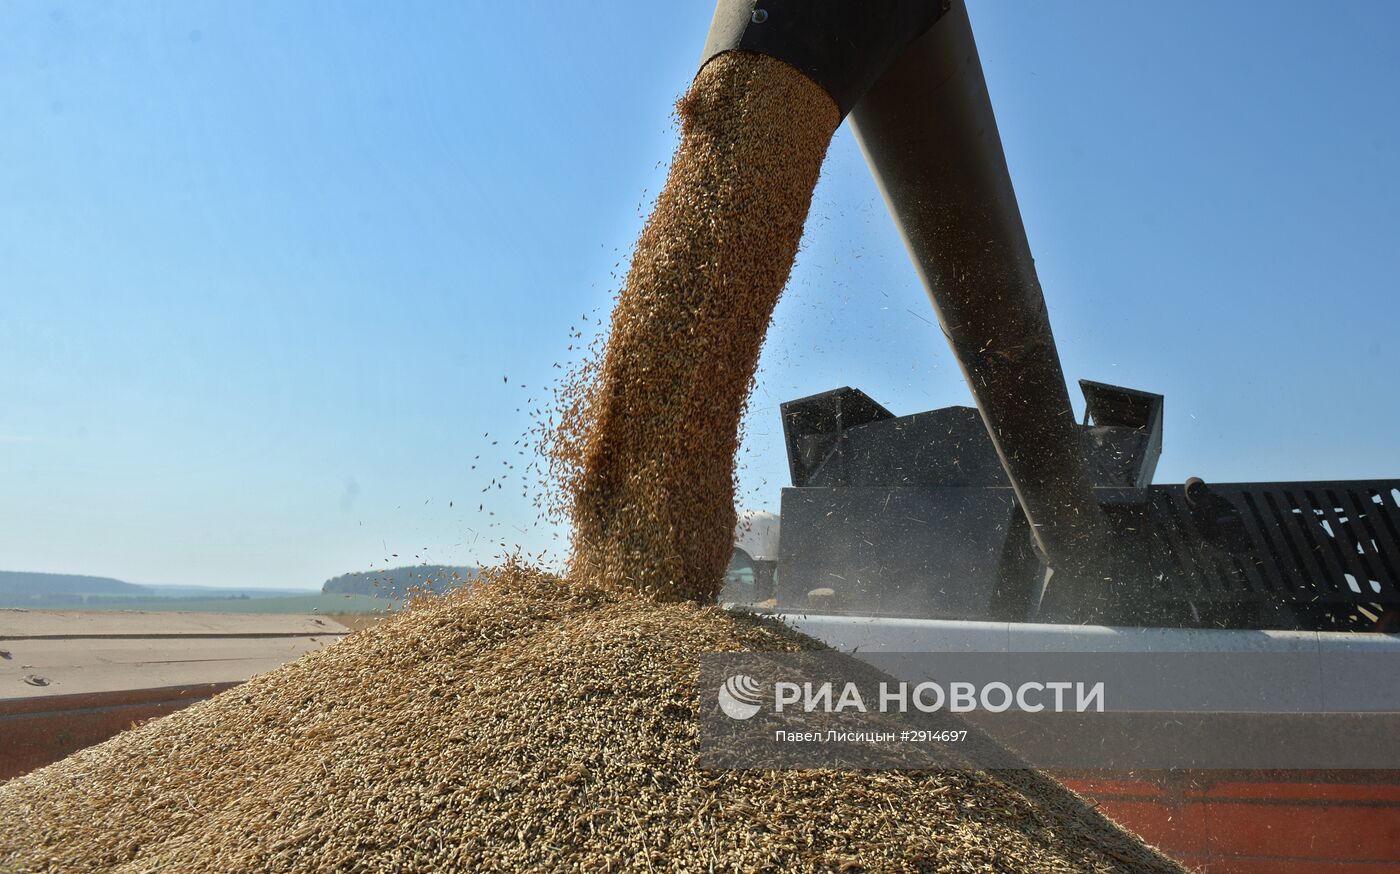 Уборка зерновых в Свердловской области